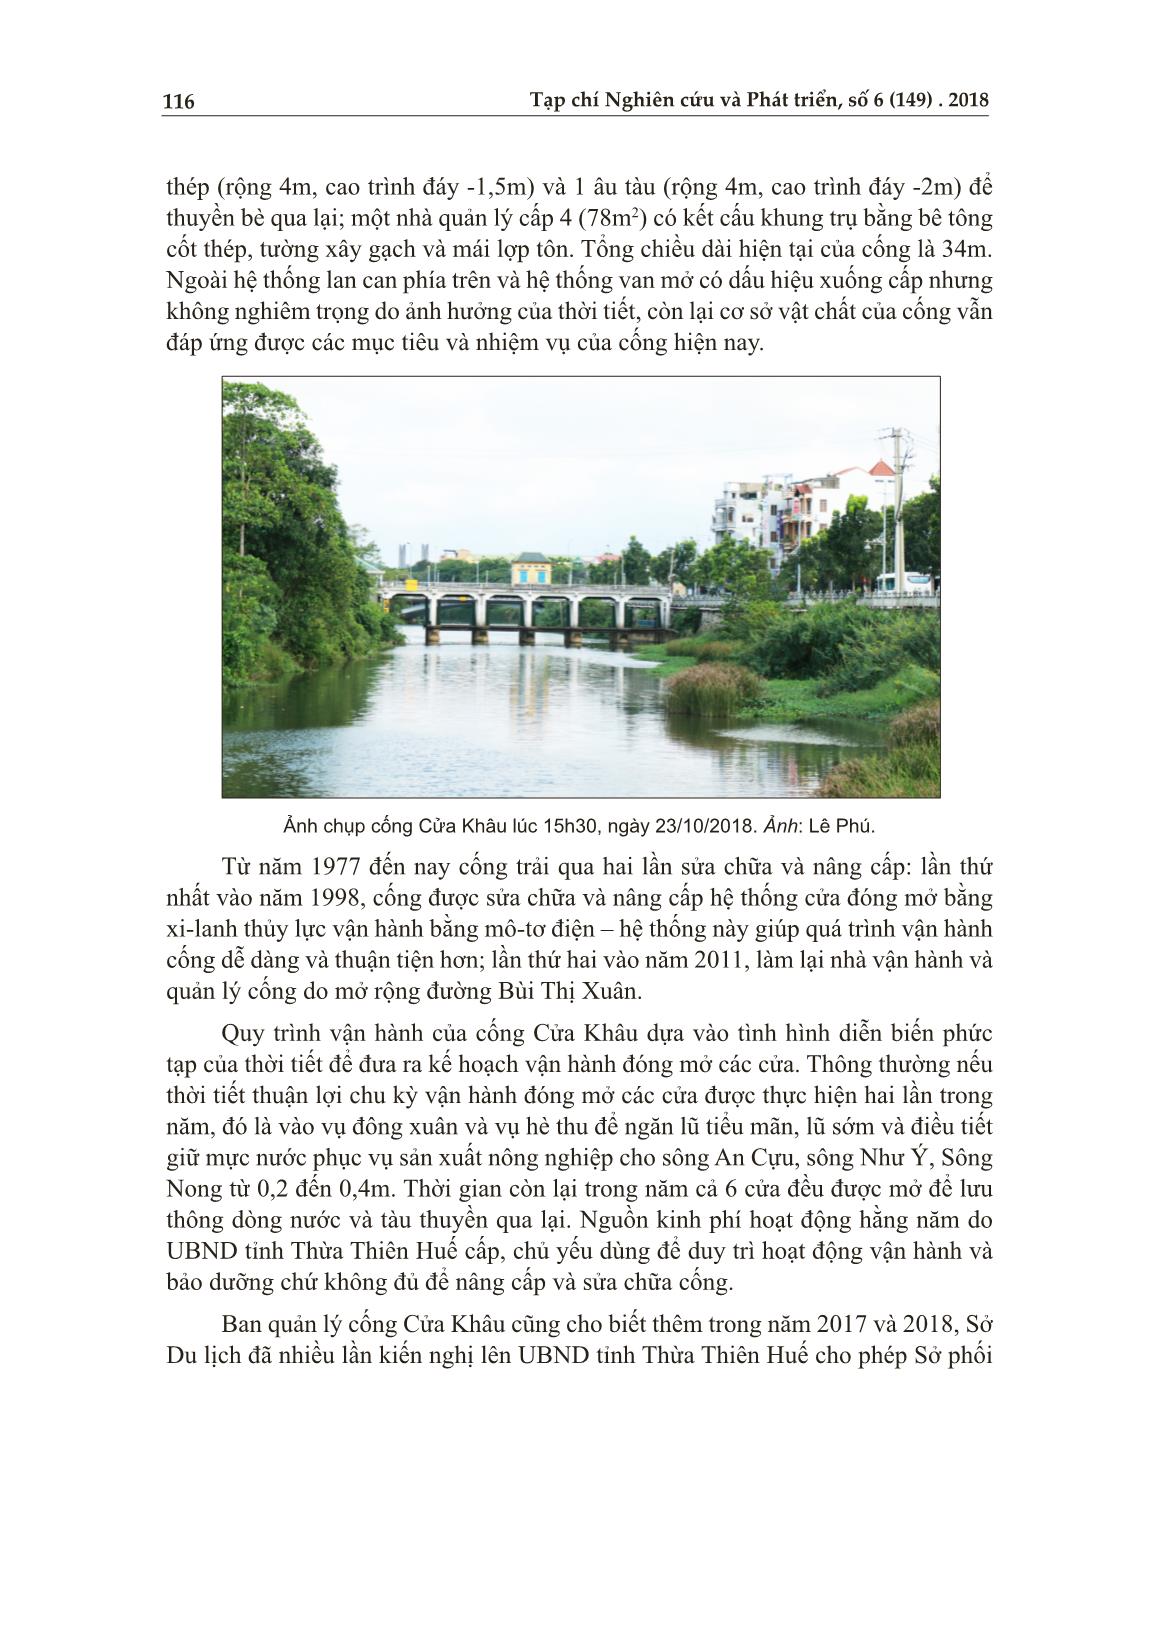 Về sự cần thiết của cống Cửa Khâu trên sông An Cựu trang 2